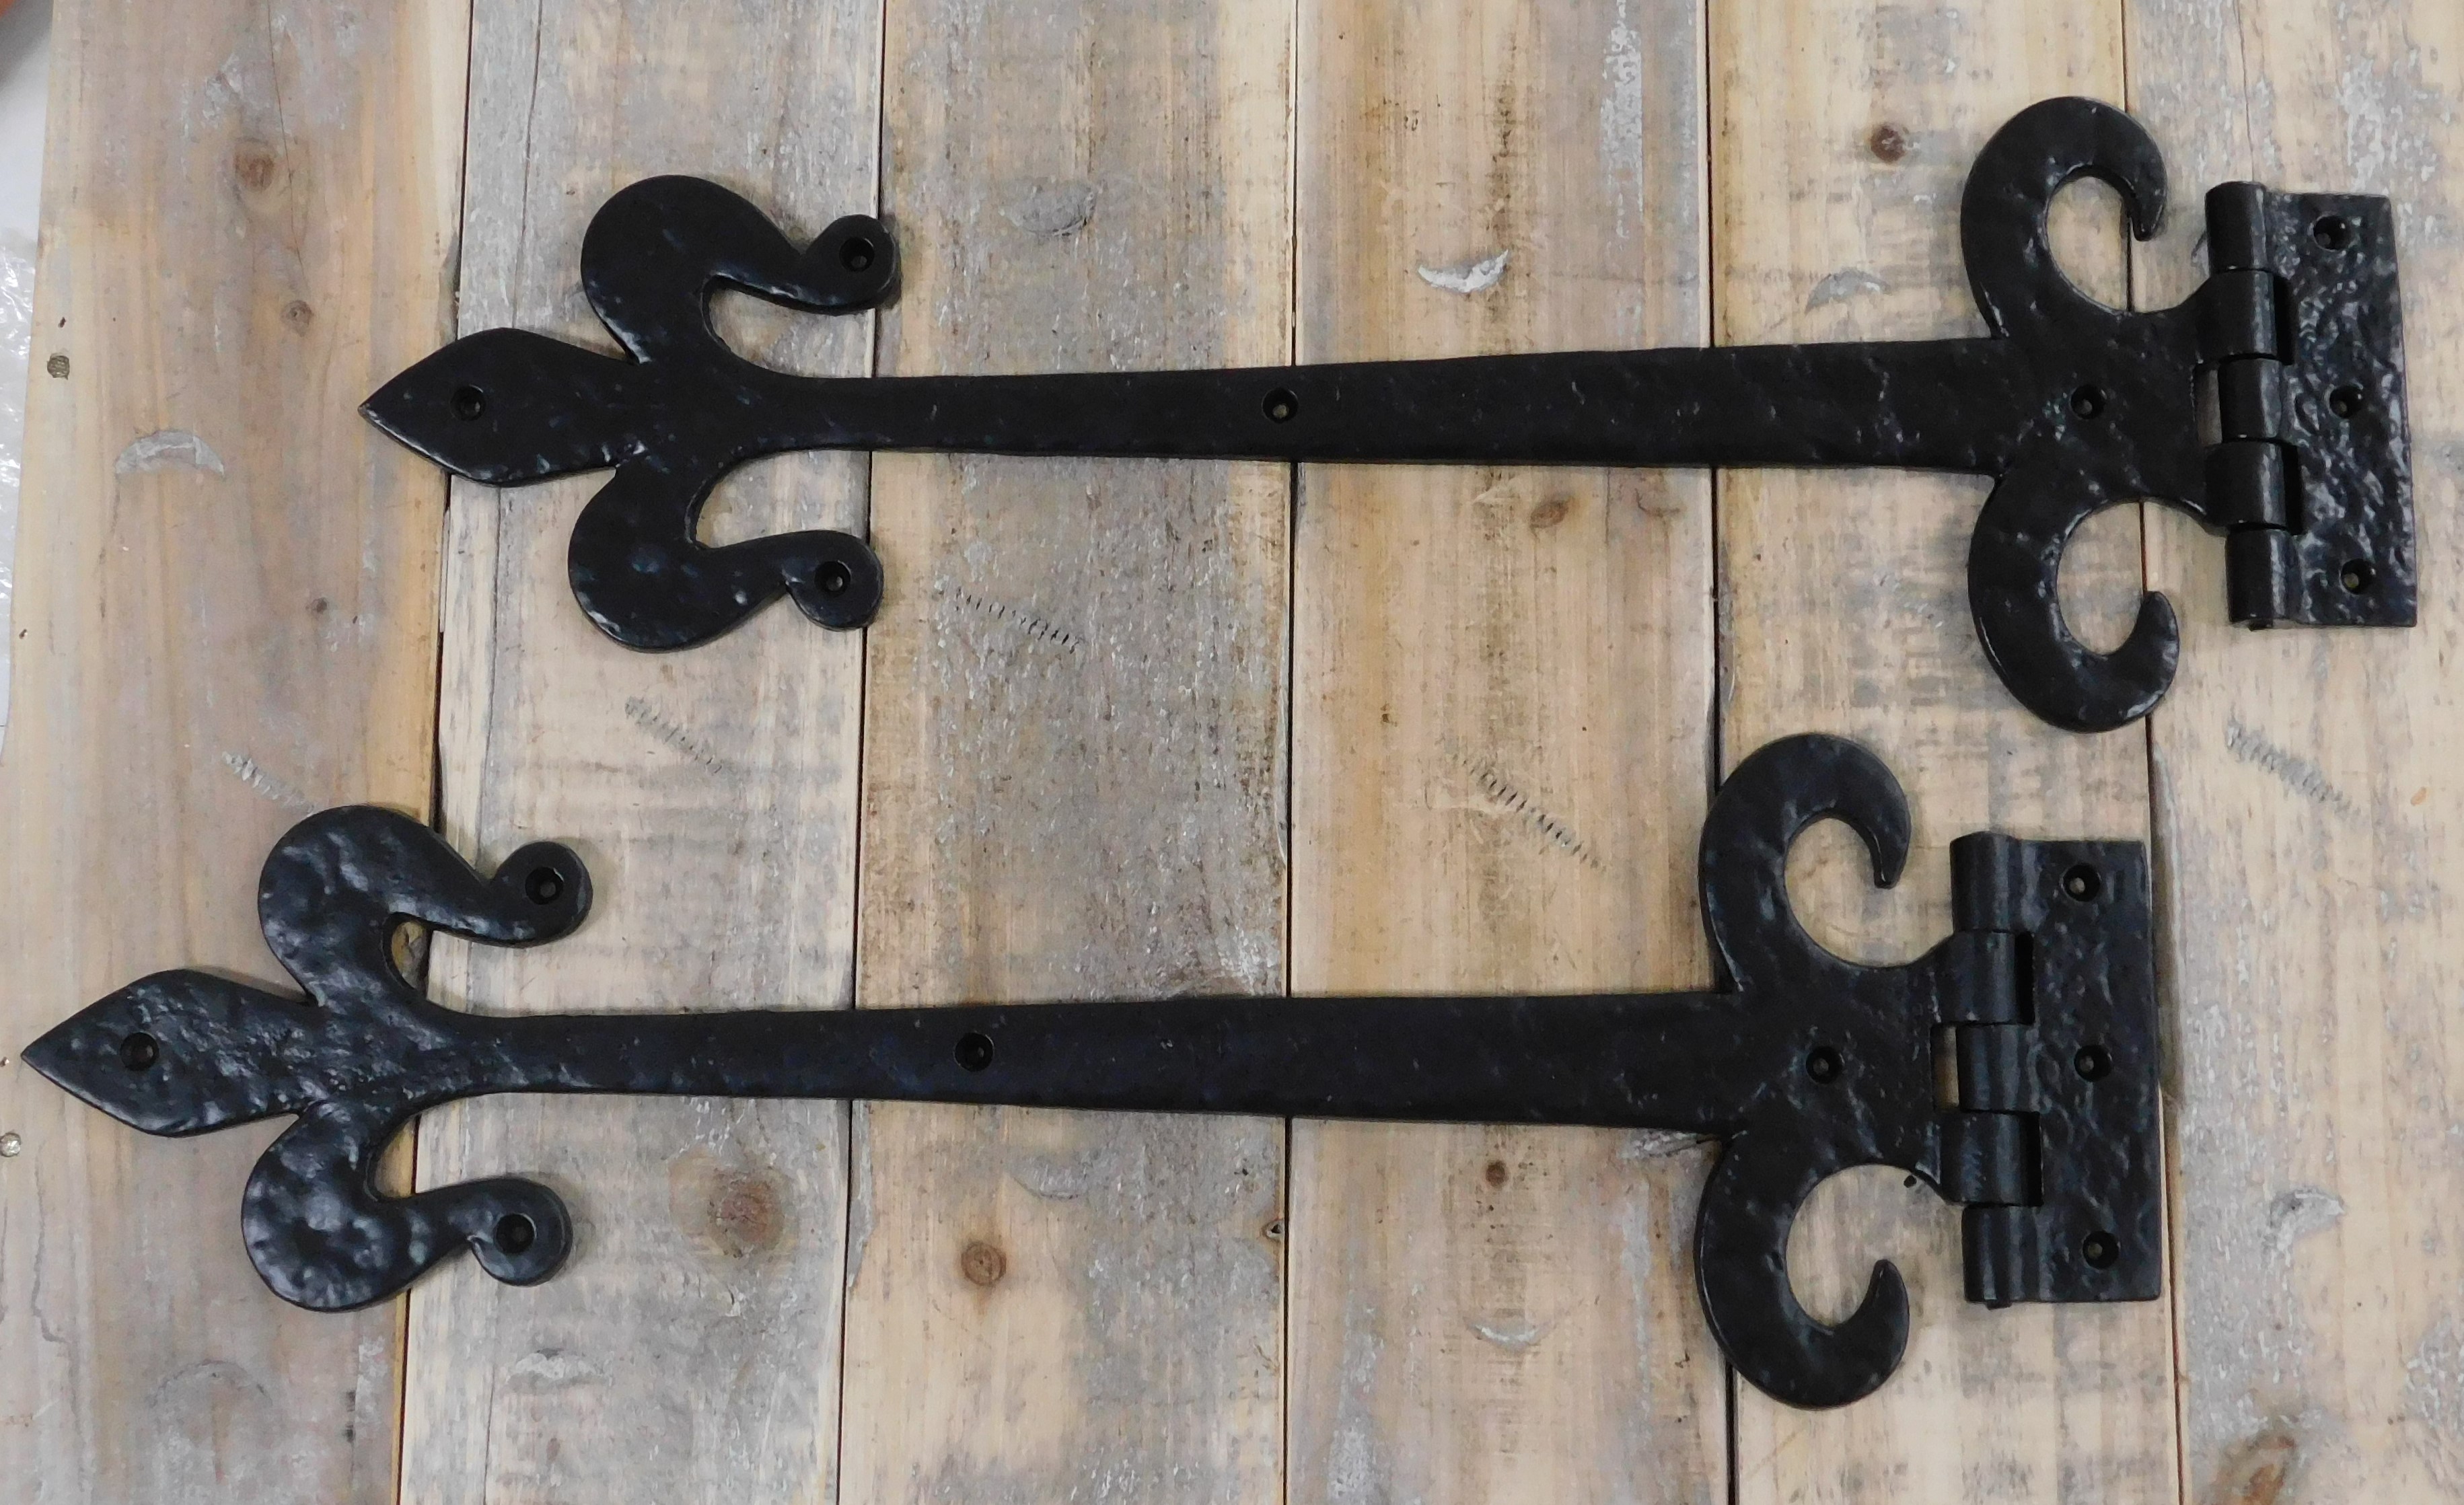 classic lever hinge medieval door hardware antique, cupboard door hinge, window hinge.